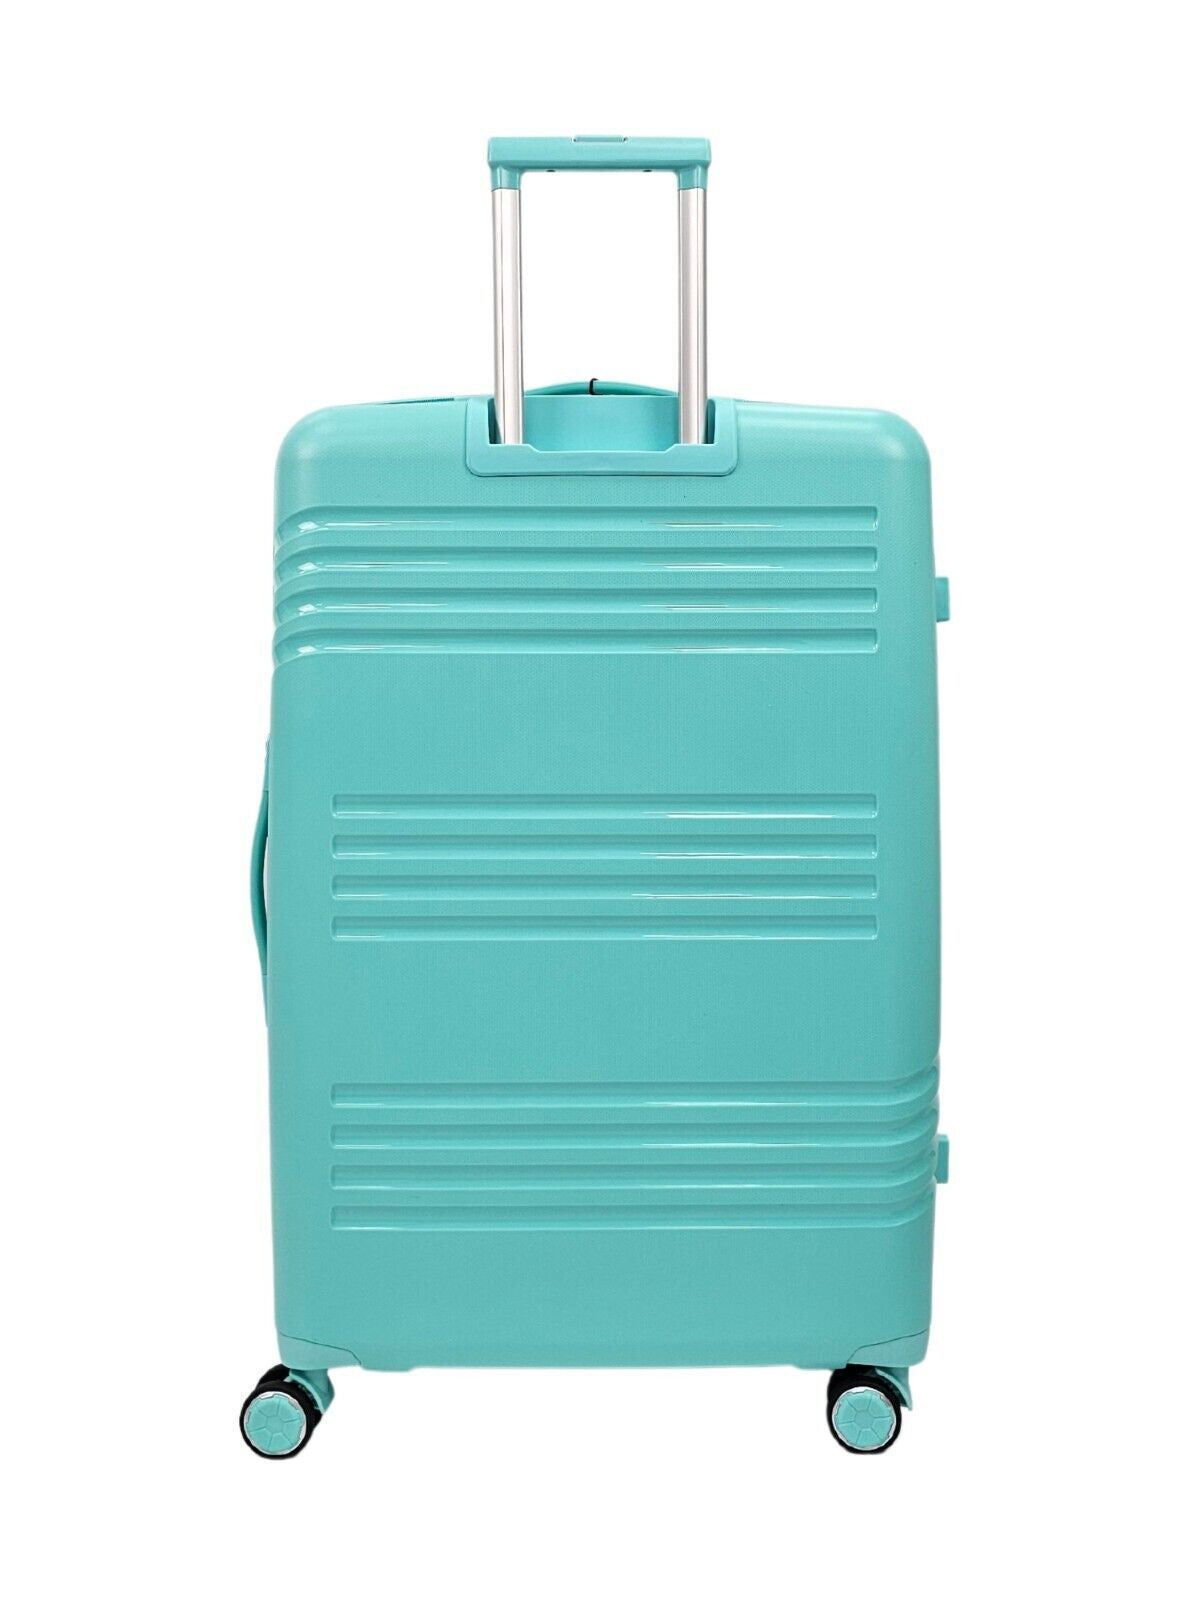 Hard Shell Teal Cabin Suitcase Set 4 Wheel Luggage TSA Bag